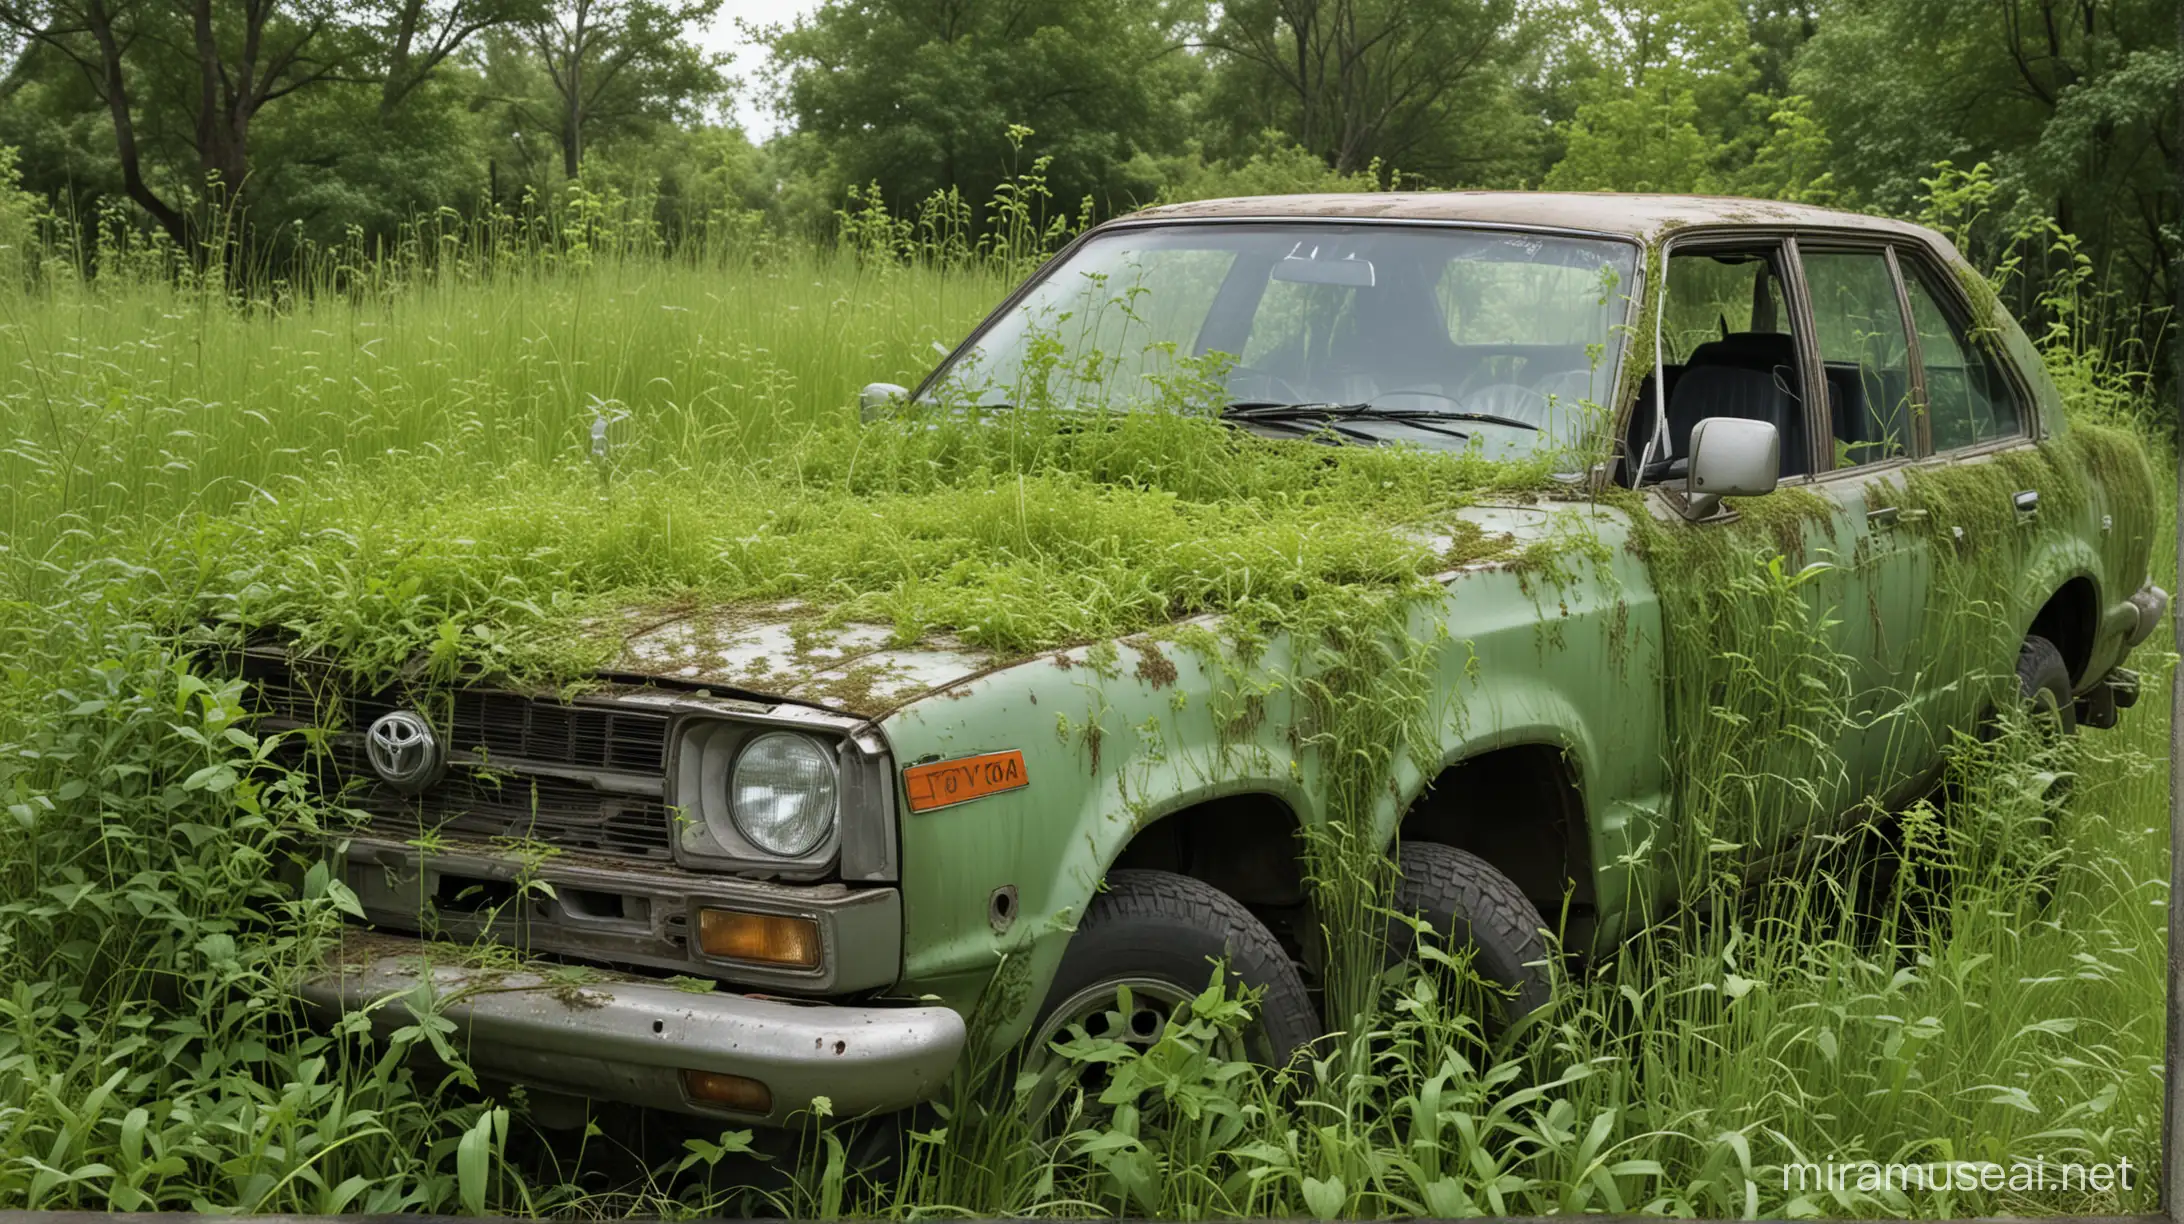 Overgrown Toyota Car Hidden in Nature